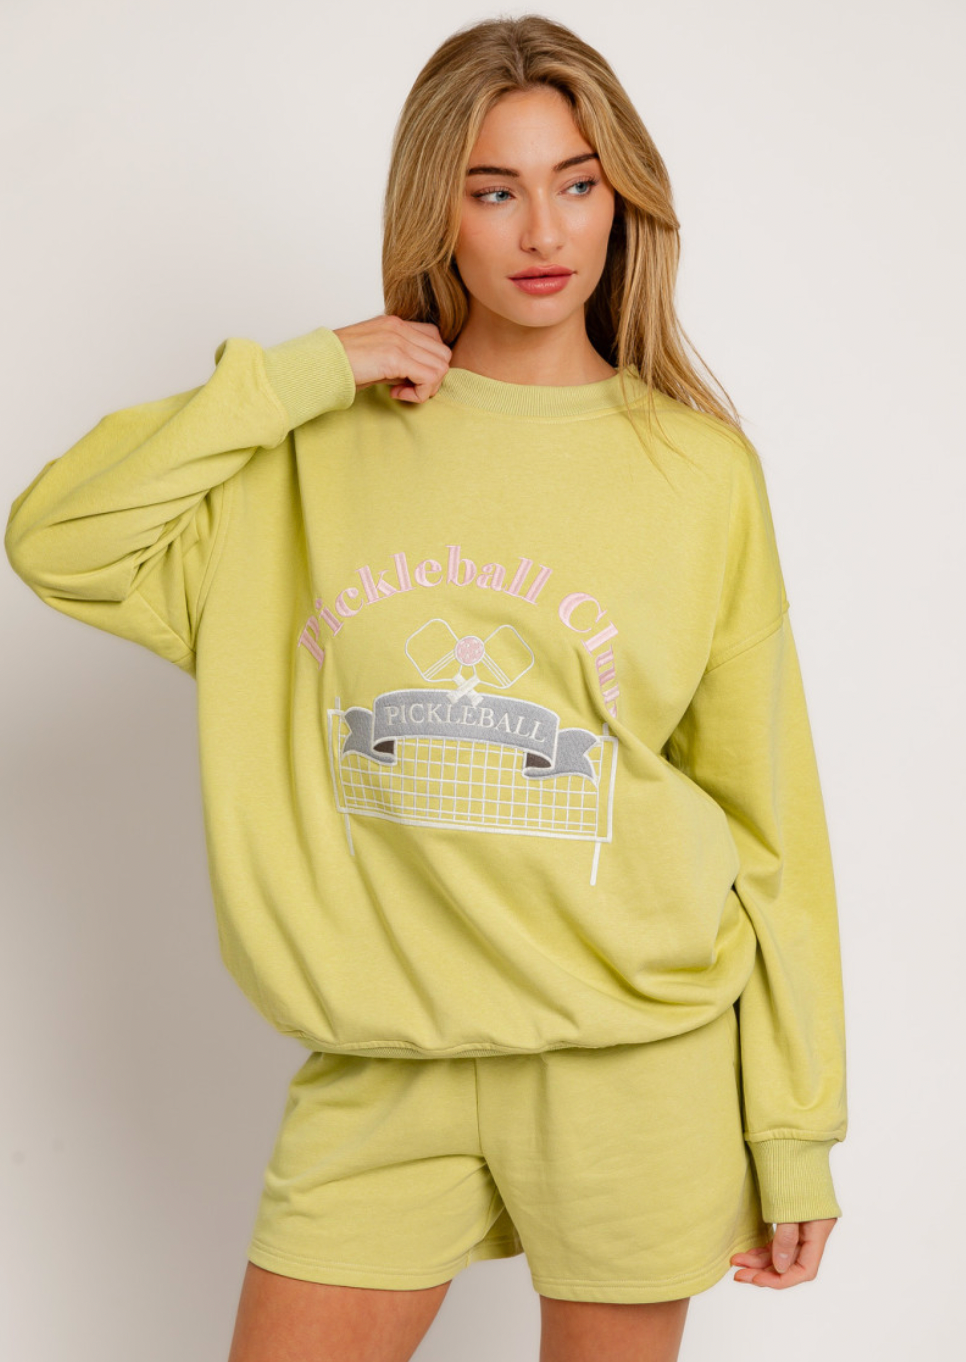 Pickleball Club Sweatshirt